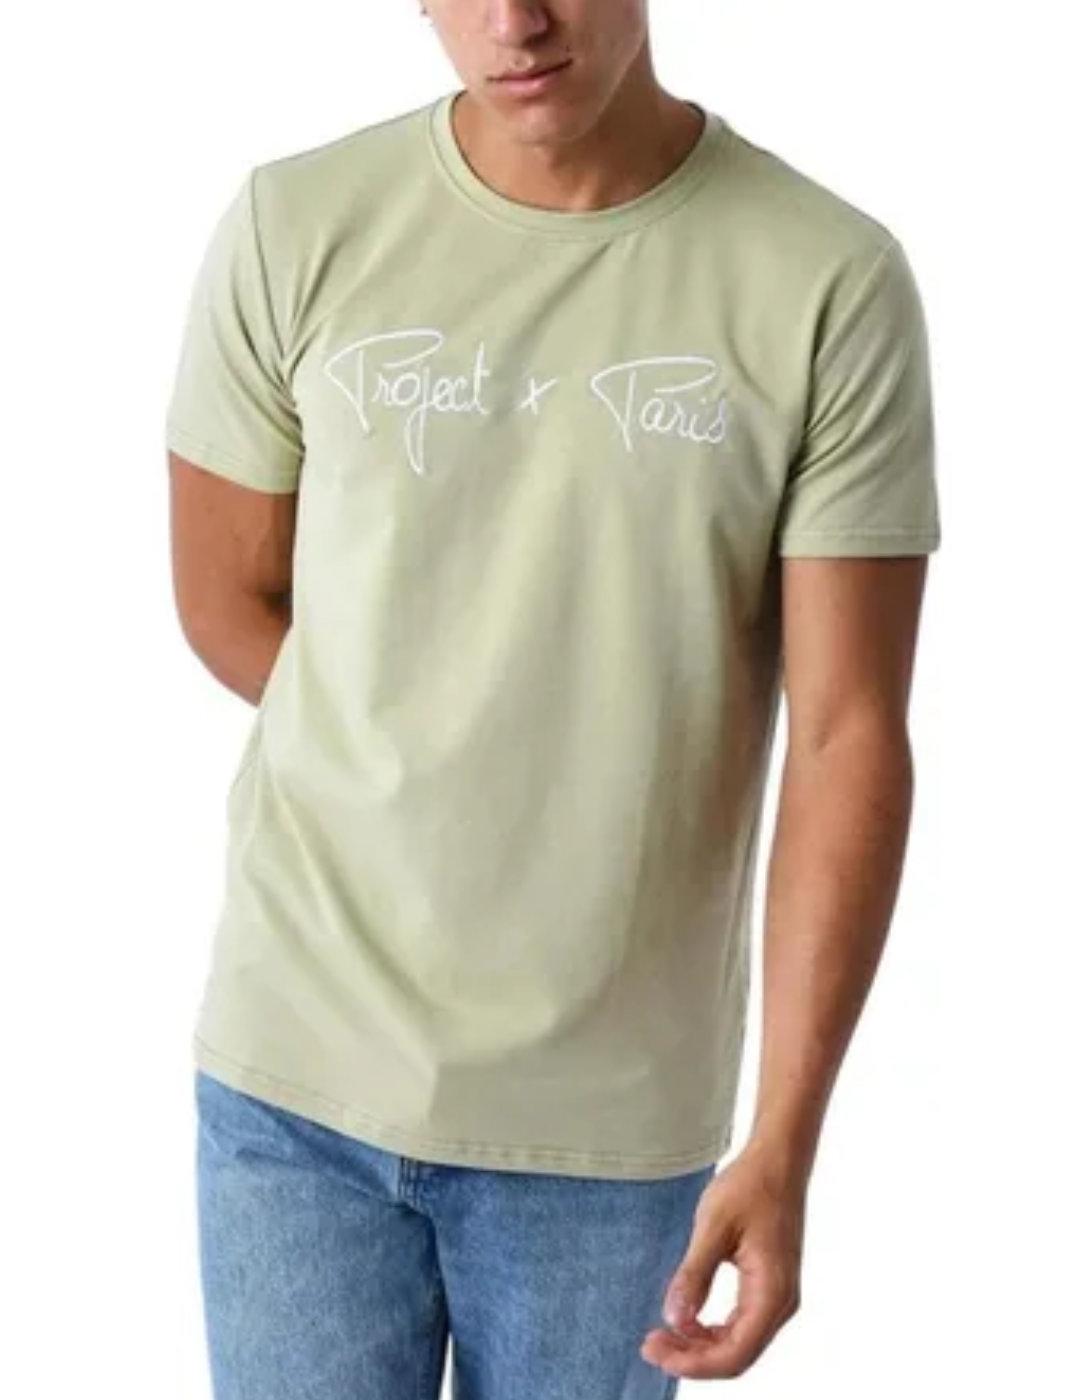 Camiseta ProjectxParis verde logo blanco manga corta unisex